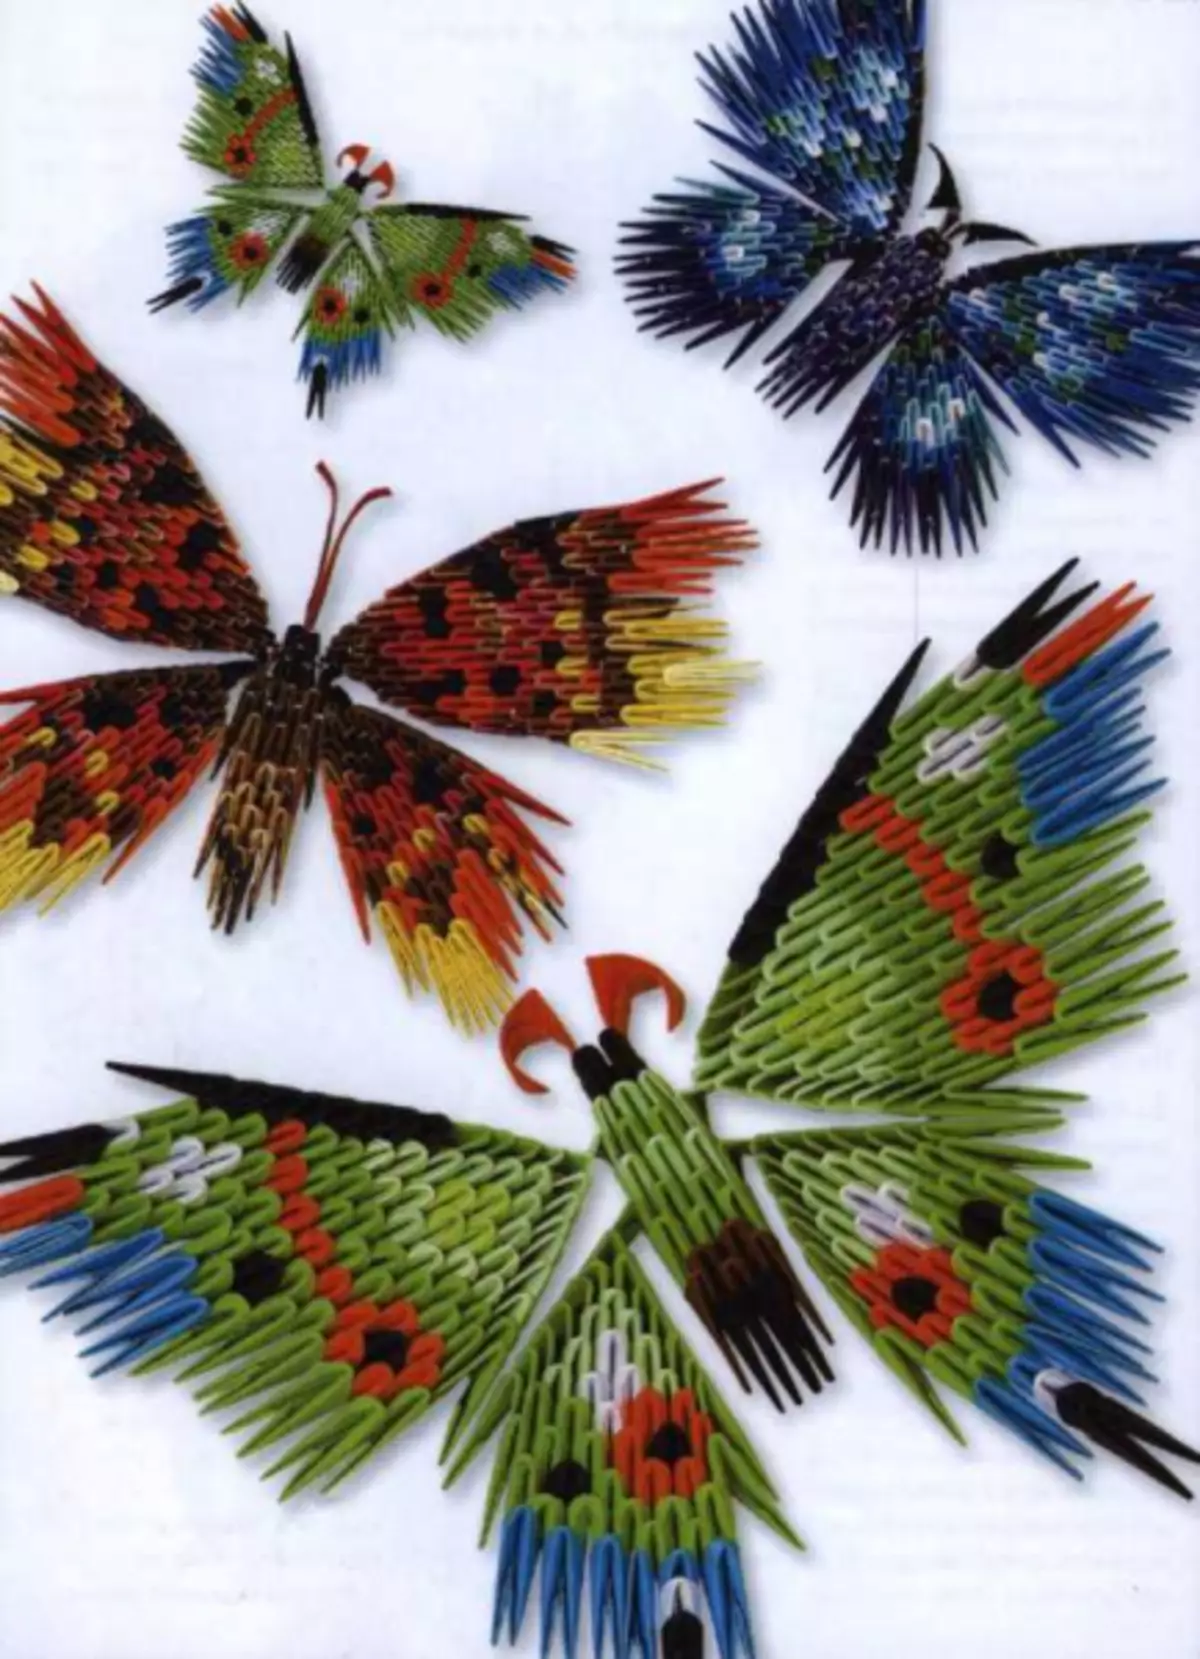 Origami Butterfly. Օրինագծերի եւ մոդուլների պարզ սխեման լուսանկարներով եւ տեսանյութերով